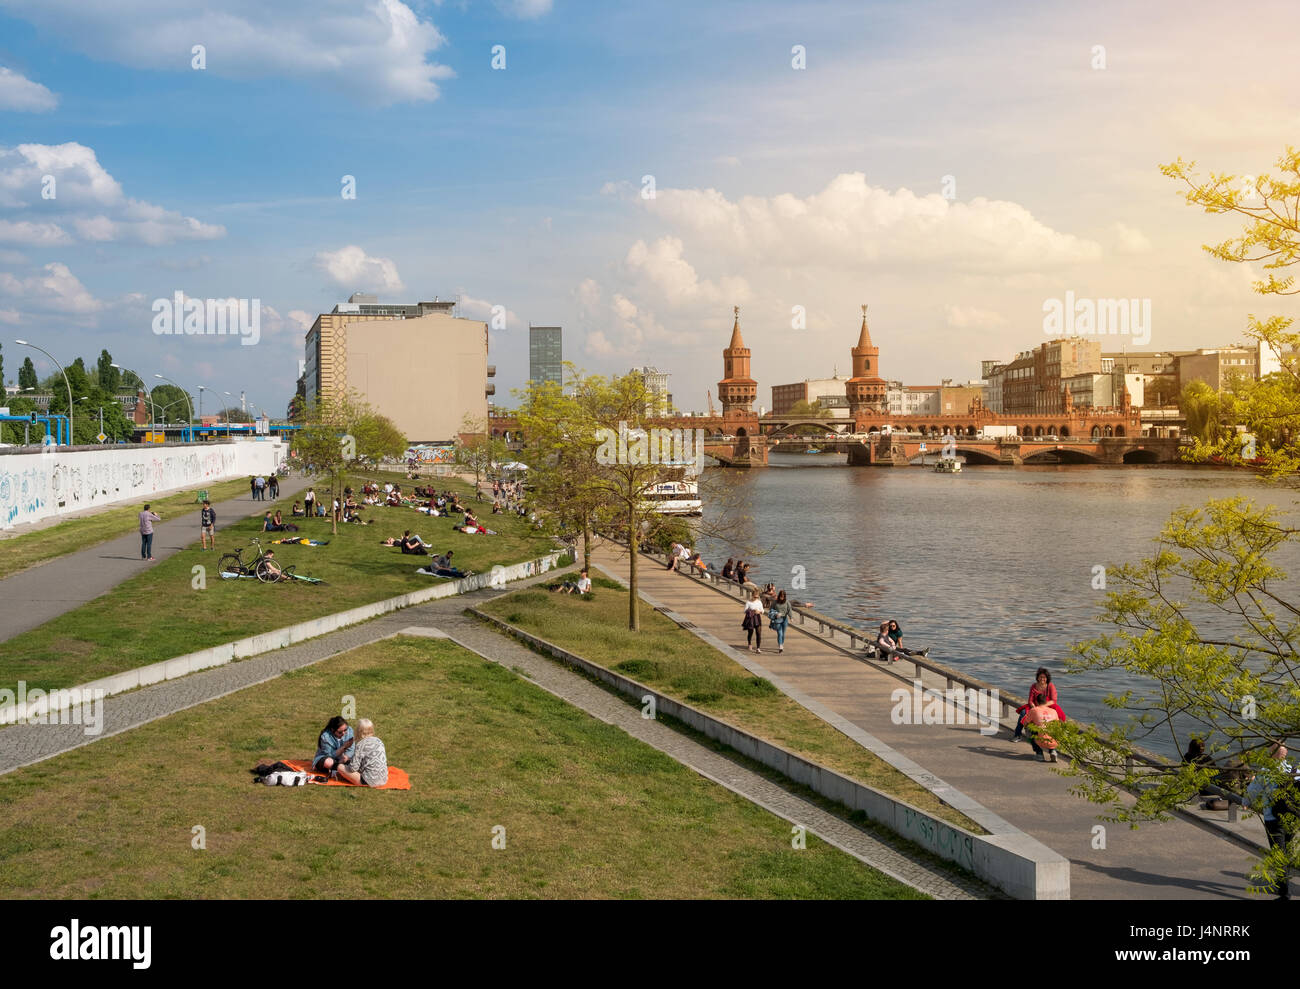 Le mur de Berlin, East Side Gallery, la rivière Spree et Oberbaum Bridge sur une journée d'été à Berlin Banque D'Images